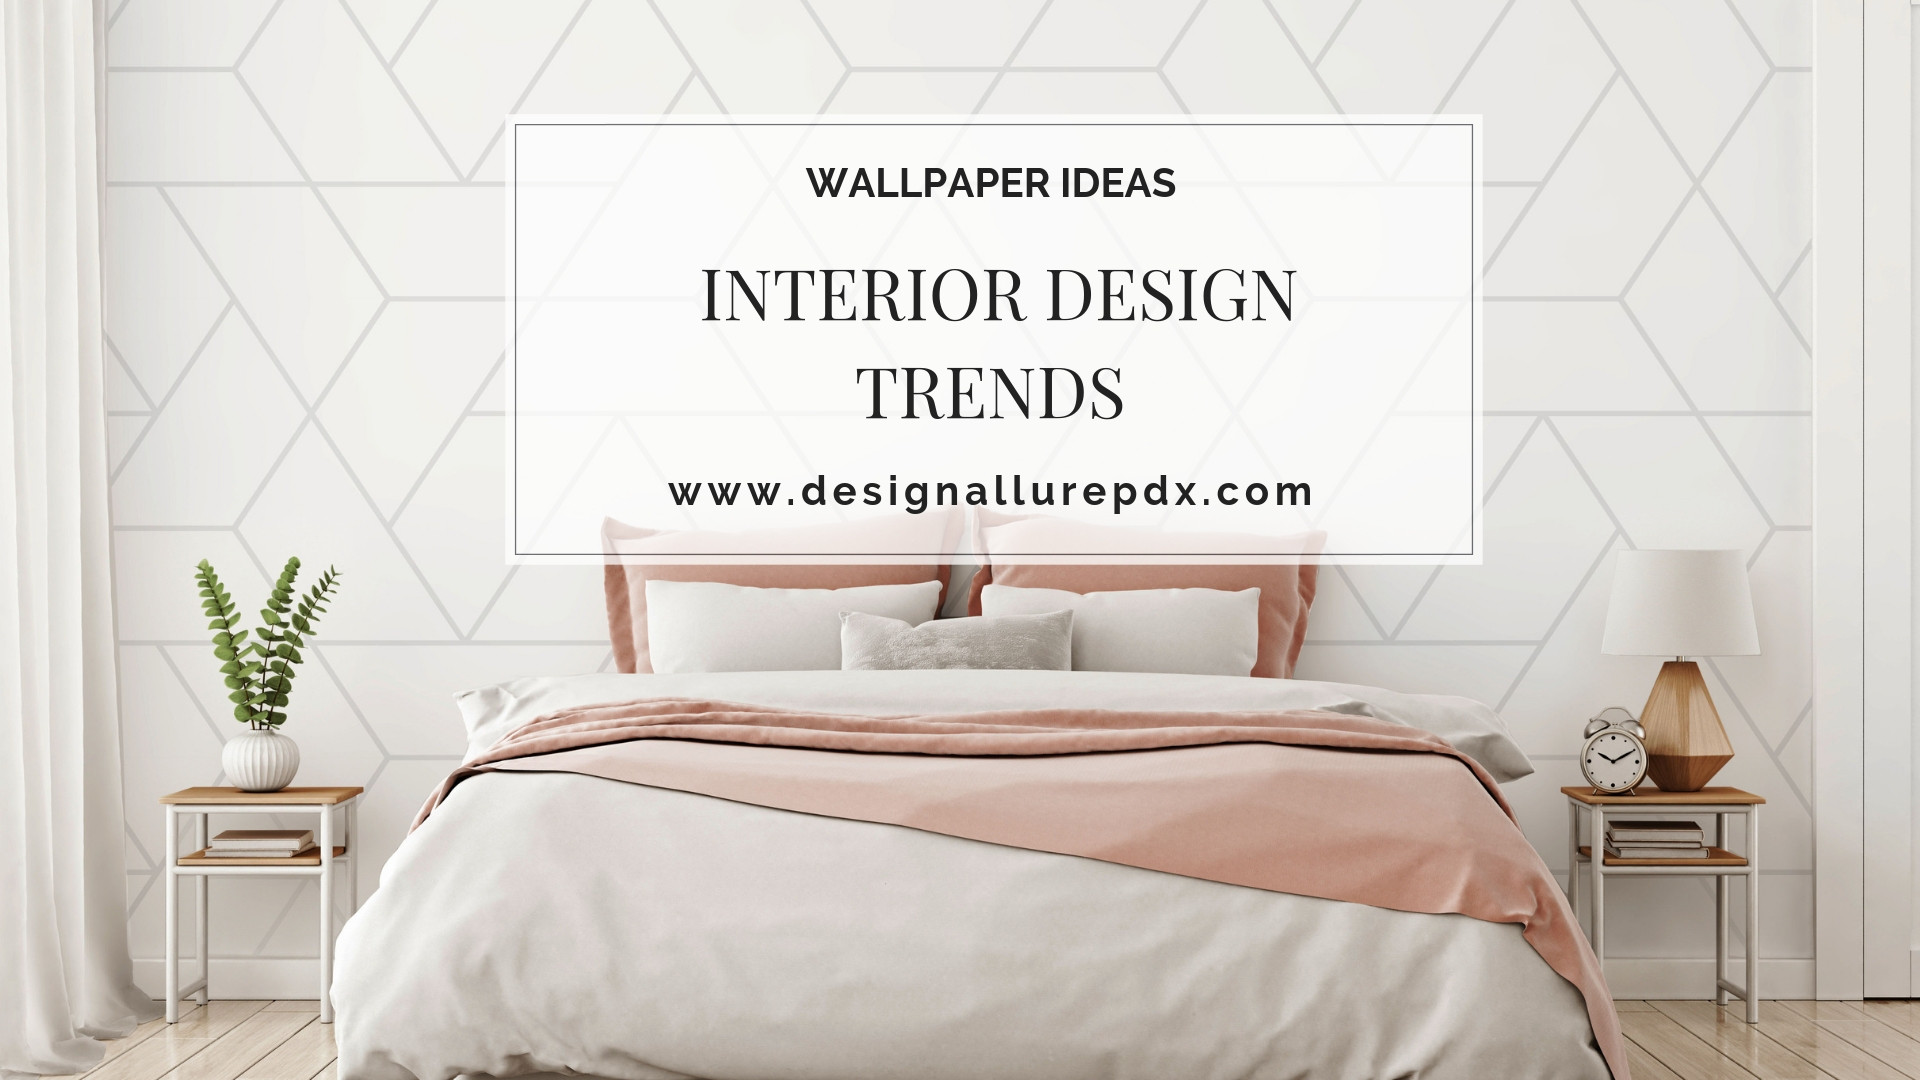 Interior Design Trends 2019 5 Top Wallpaper Trends - Latest Wallpaper Trends 2019 - HD Wallpaper 